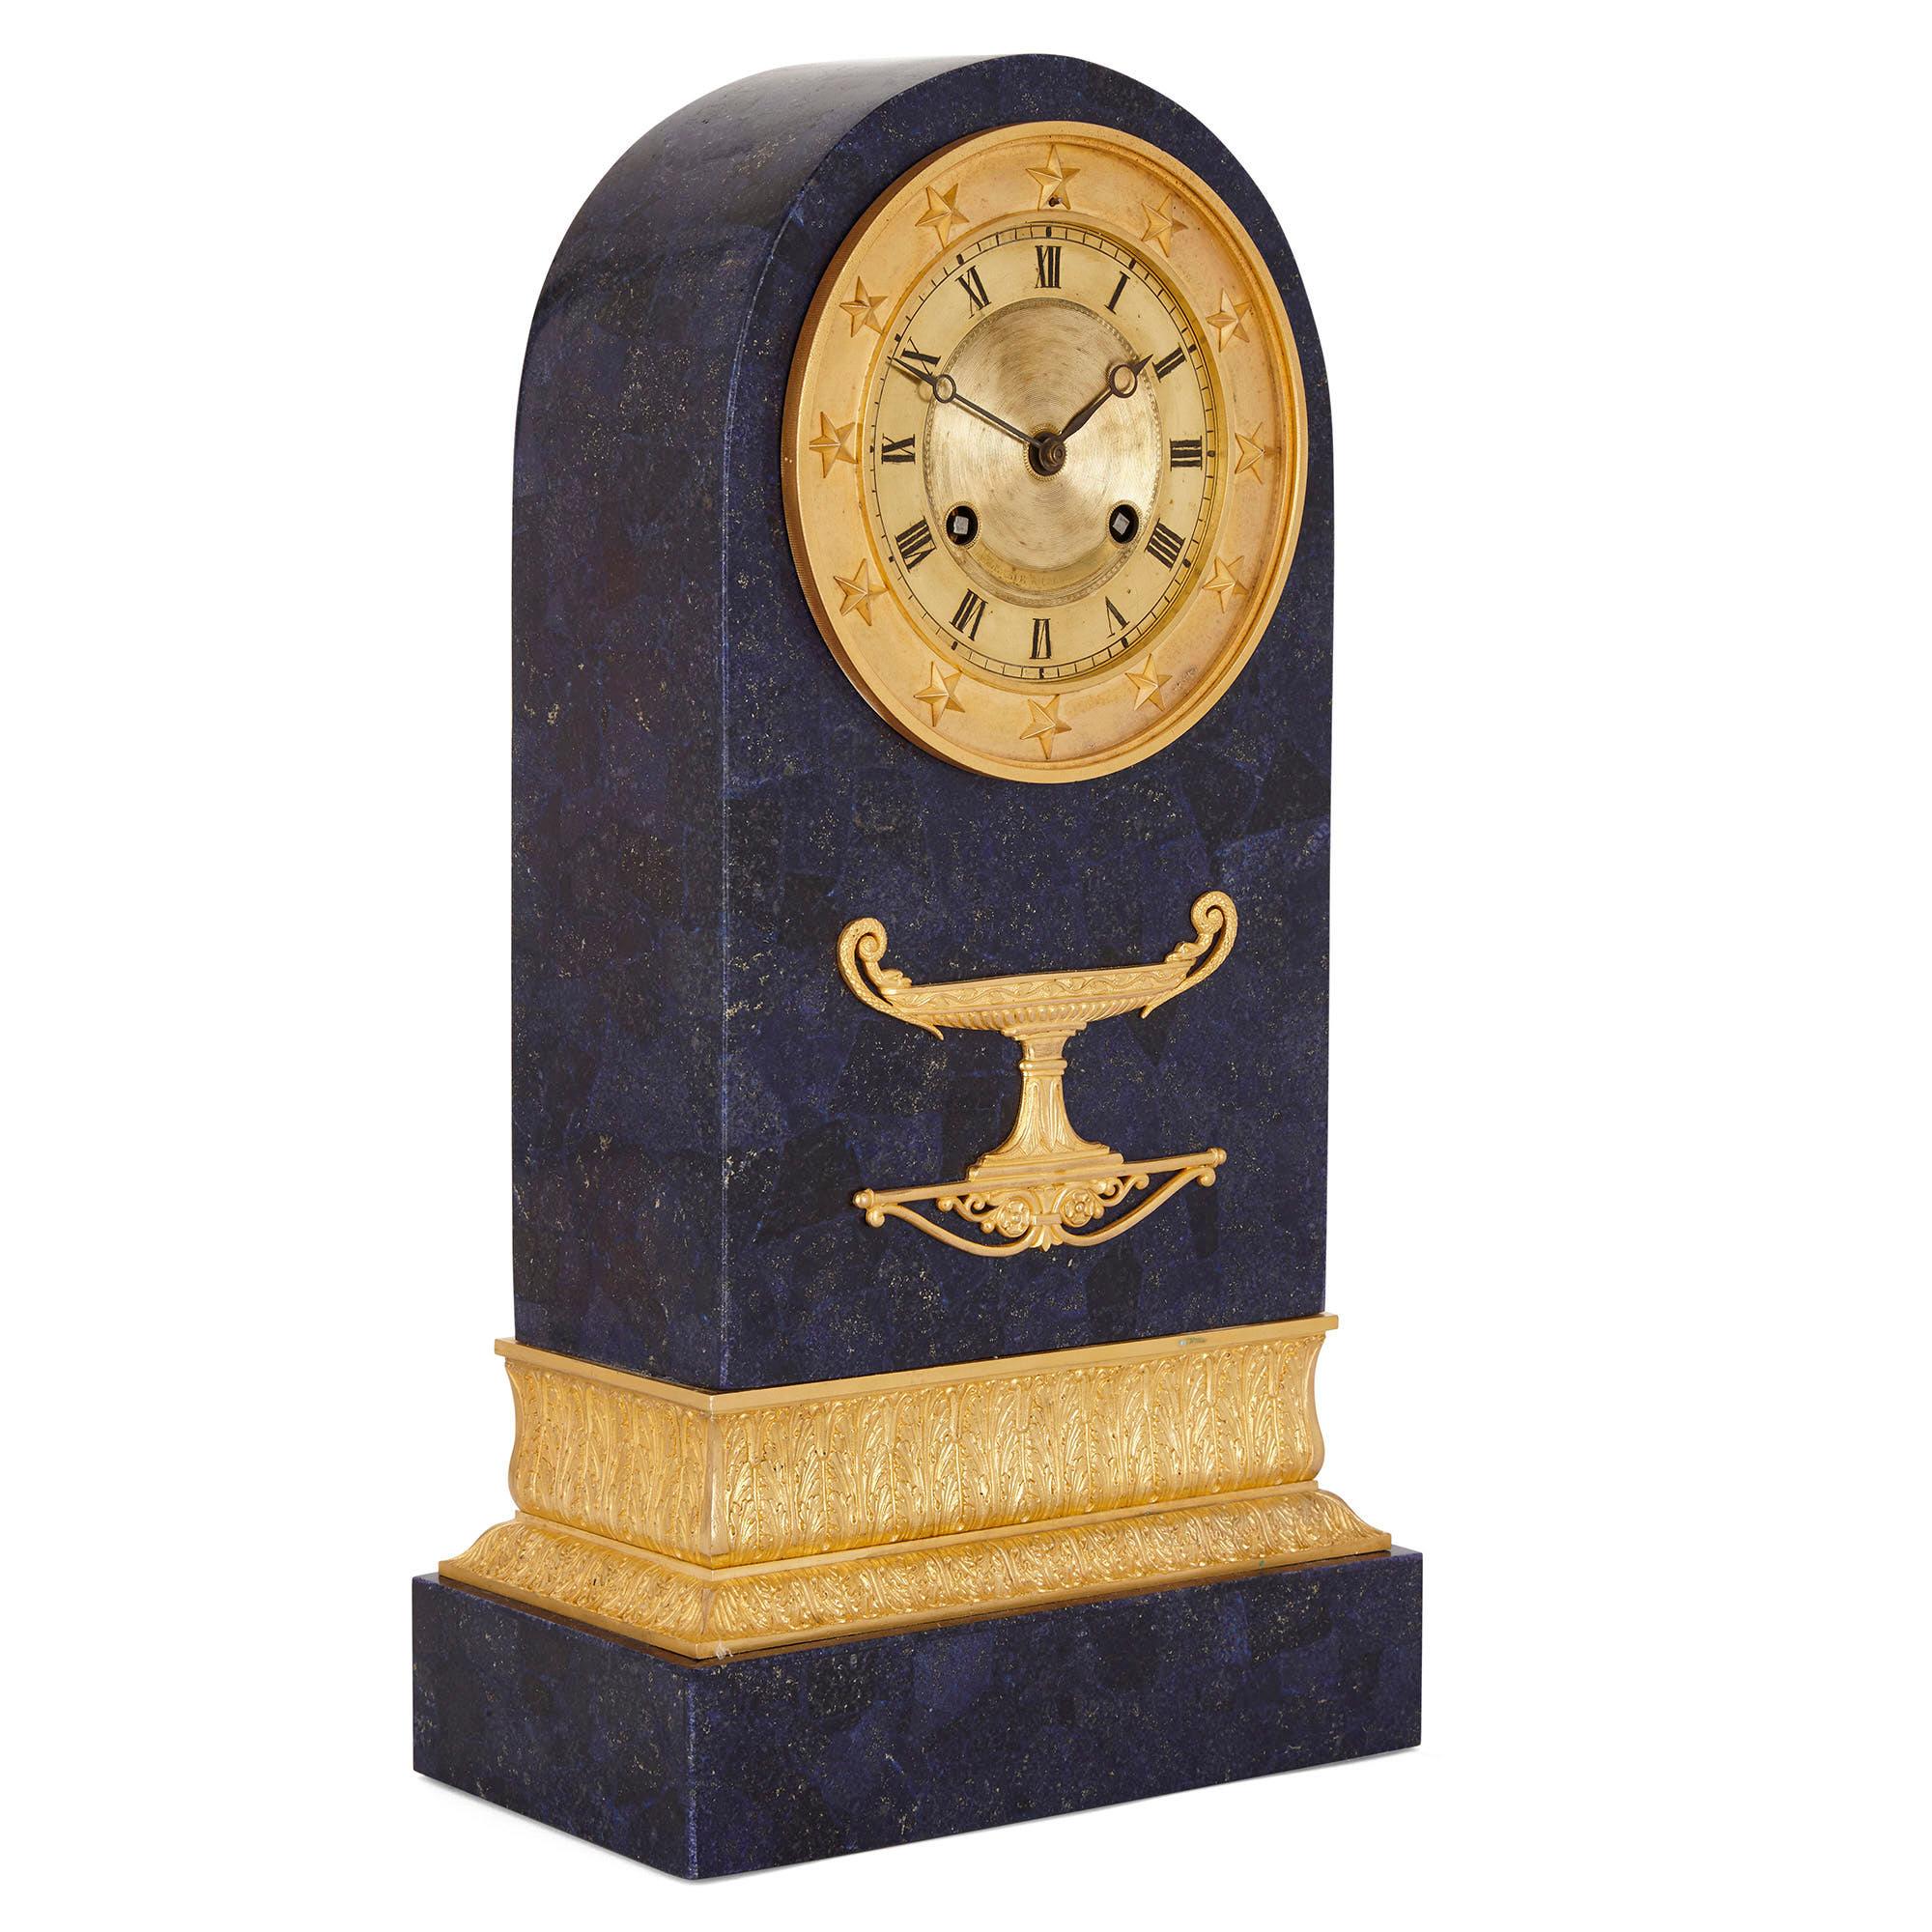 Cette pendule de cheminée date de l'époque de Charles X et est réalisée en bronze doré avec un placage de lapis-lazuli plus tardif. Le corps de l'horloge est de forme colonnaire, avec un profil rectangulaire et un sommet semi-circulaire. Le corps